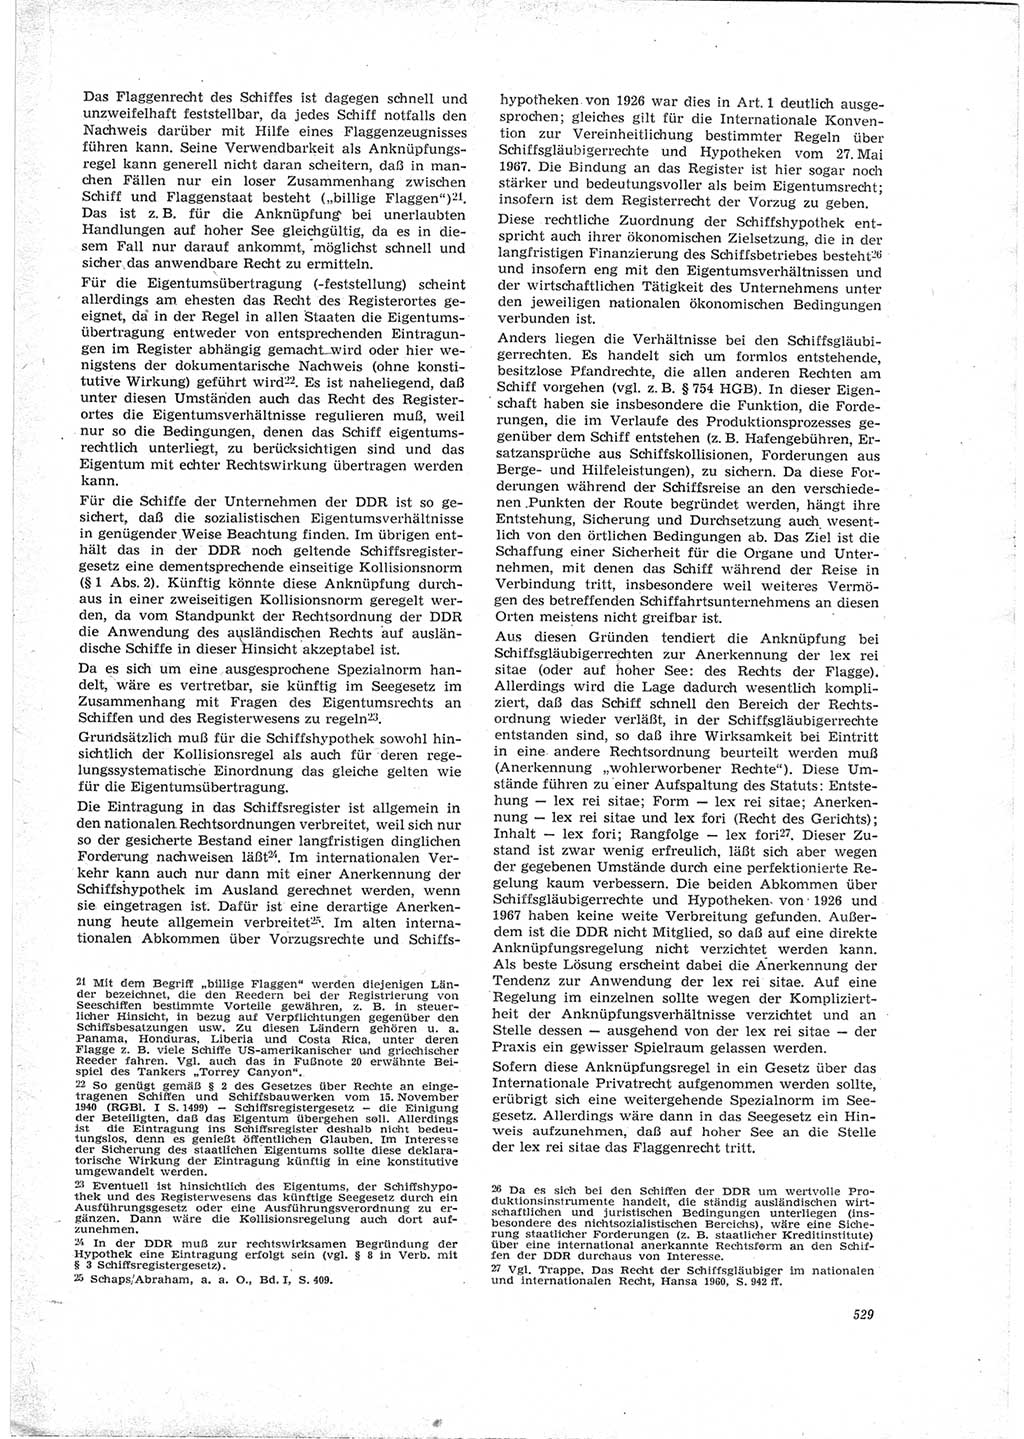 Neue Justiz (NJ), Zeitschrift für Recht und Rechtswissenschaft [Deutsche Demokratische Republik (DDR)], 23. Jahrgang 1969, Seite 529 (NJ DDR 1969, S. 529)